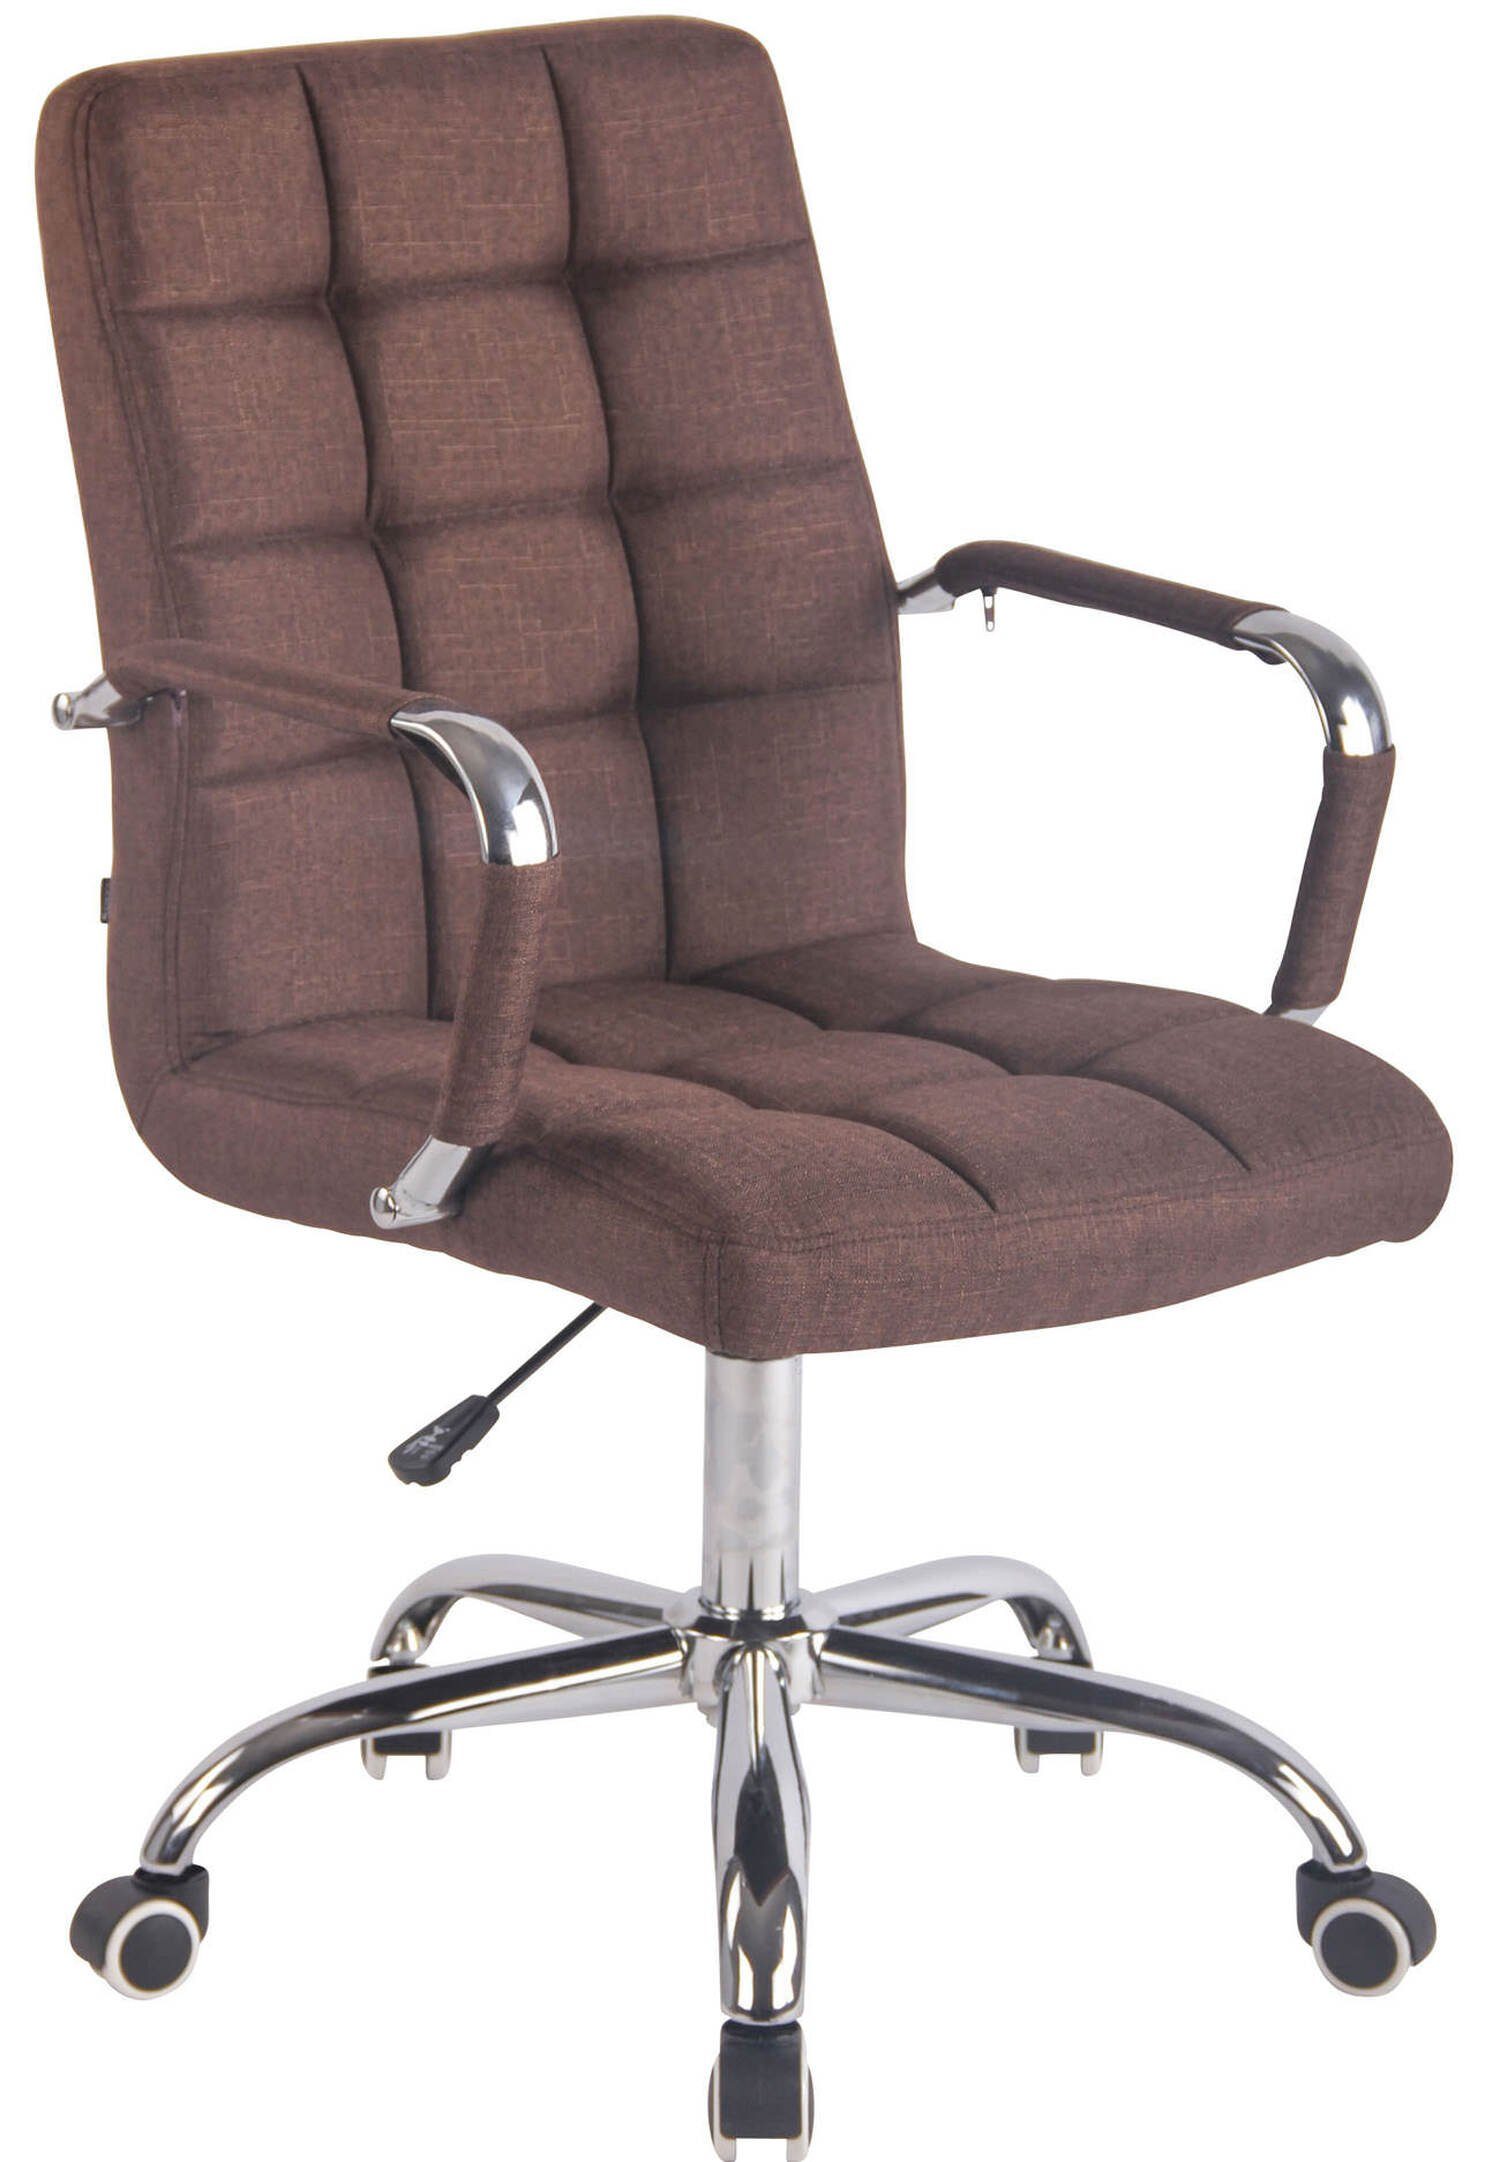 TPFLiving Bürostuhl Deal mit bequemer Rückenlehne - höhenverstellbar und 360° drehbar (Schreibtischstuhl, Drehstuhl, Chefsessel, Bürostuhl XXL), Gestell: Metall chrom - Sitzfläche: Stoff braun